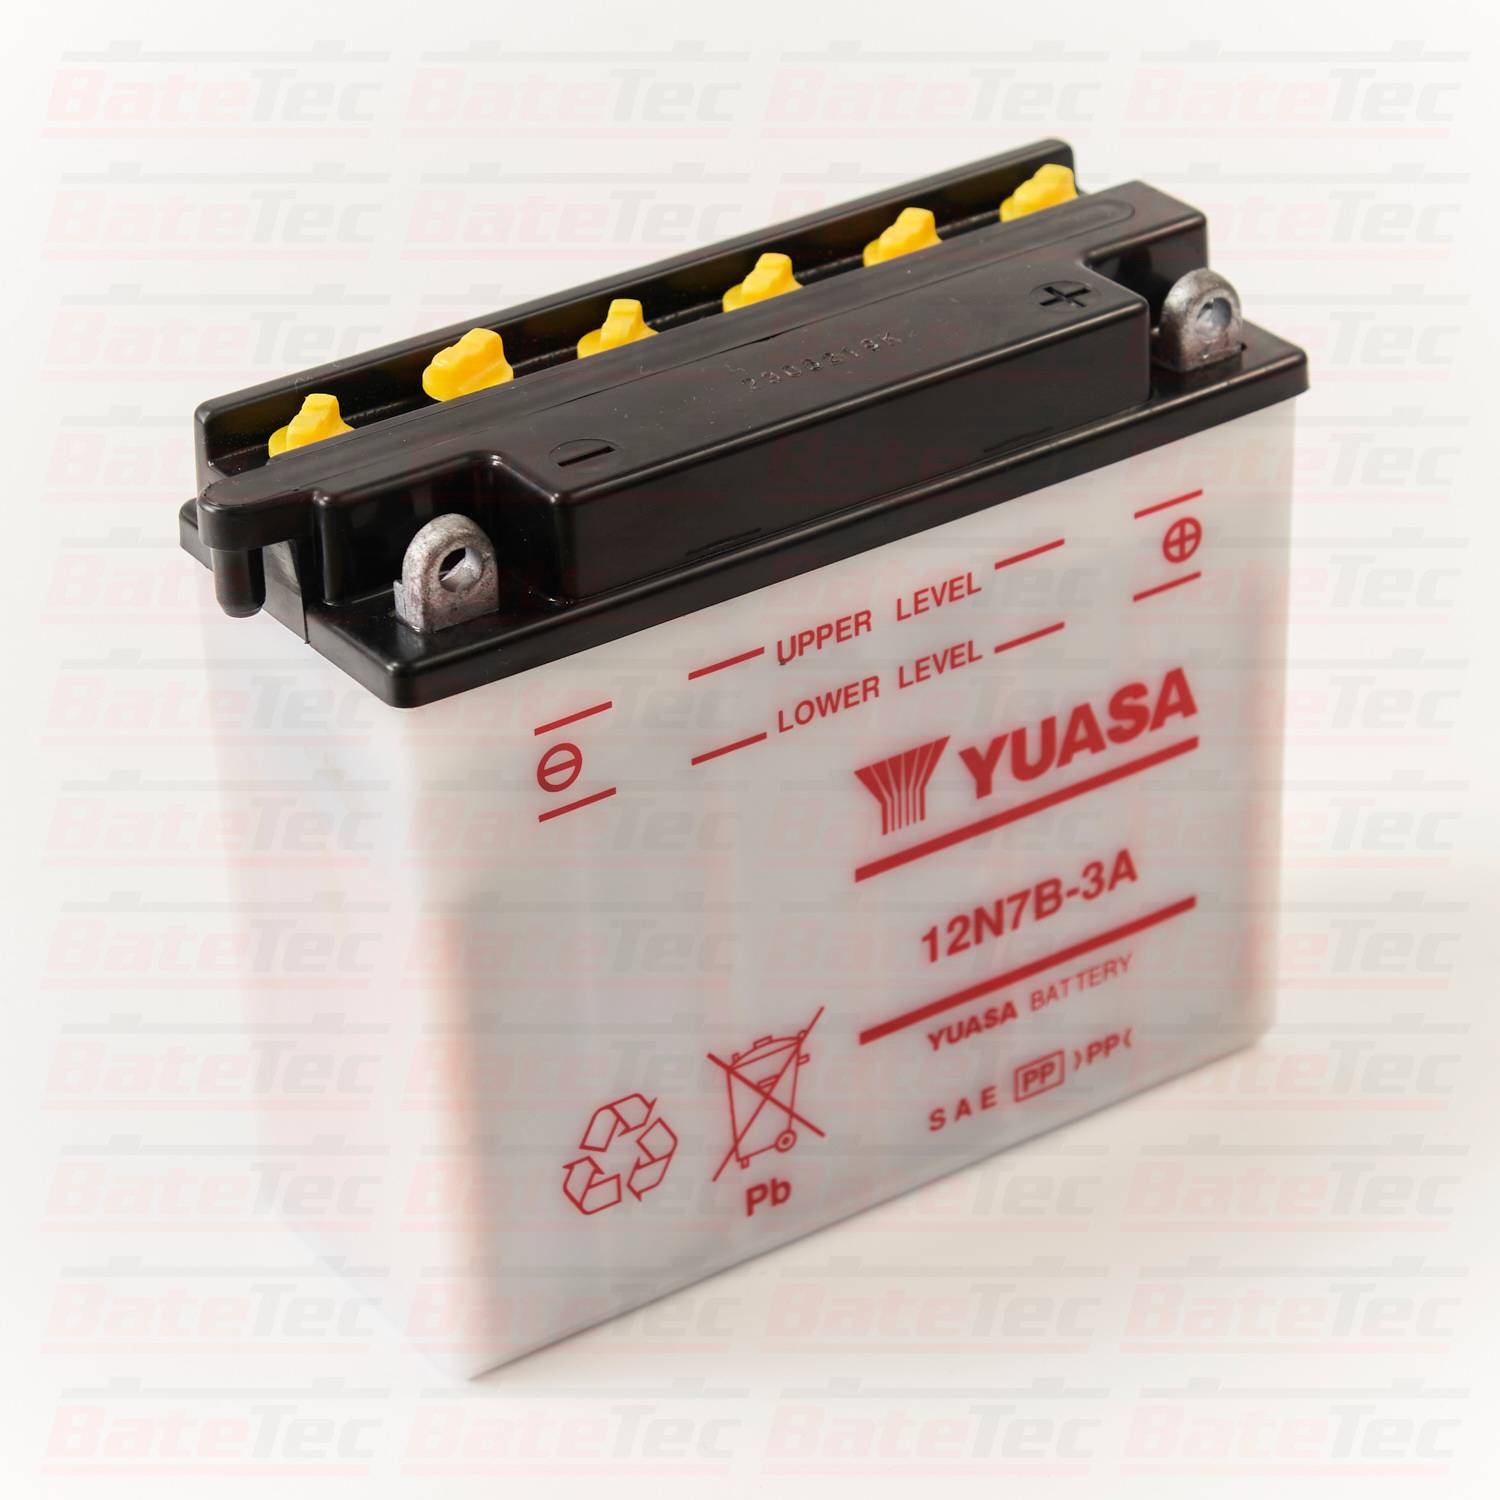 Batería Moto Yuasa 12N10-3A - 12V - 10Ah